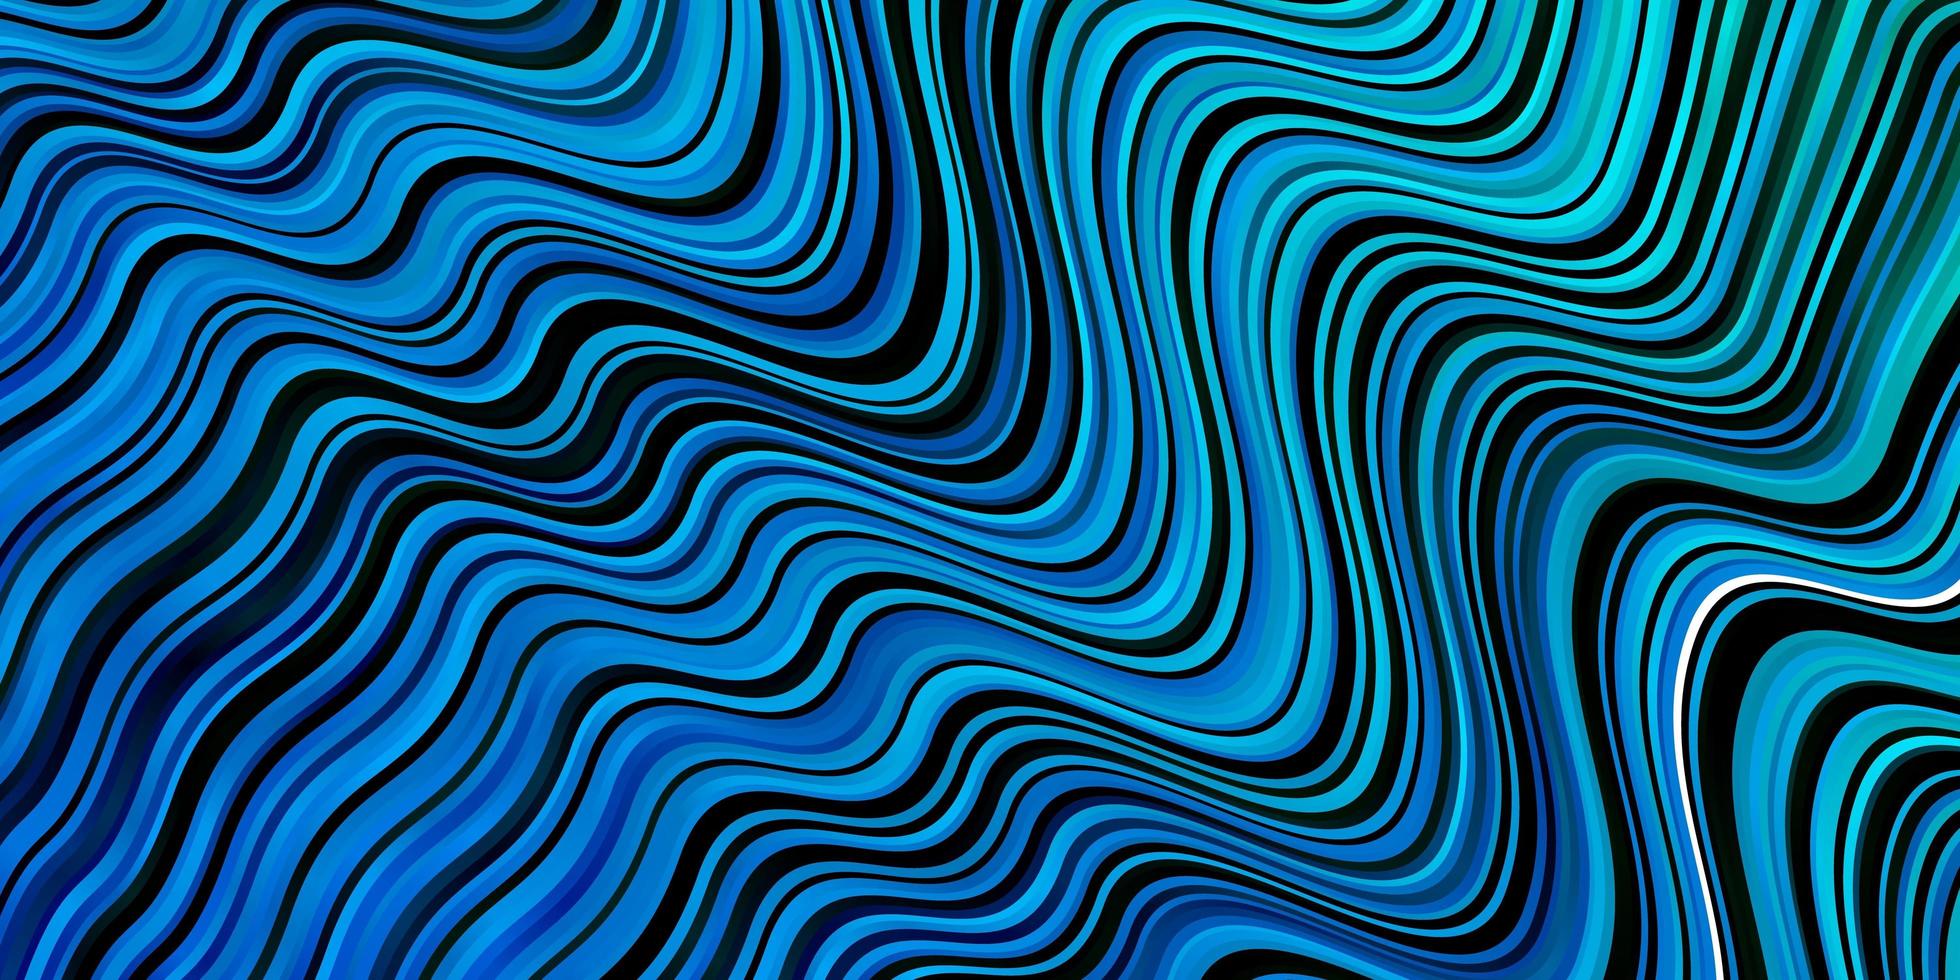 patrón de vector azul oscuro con líneas torcidas